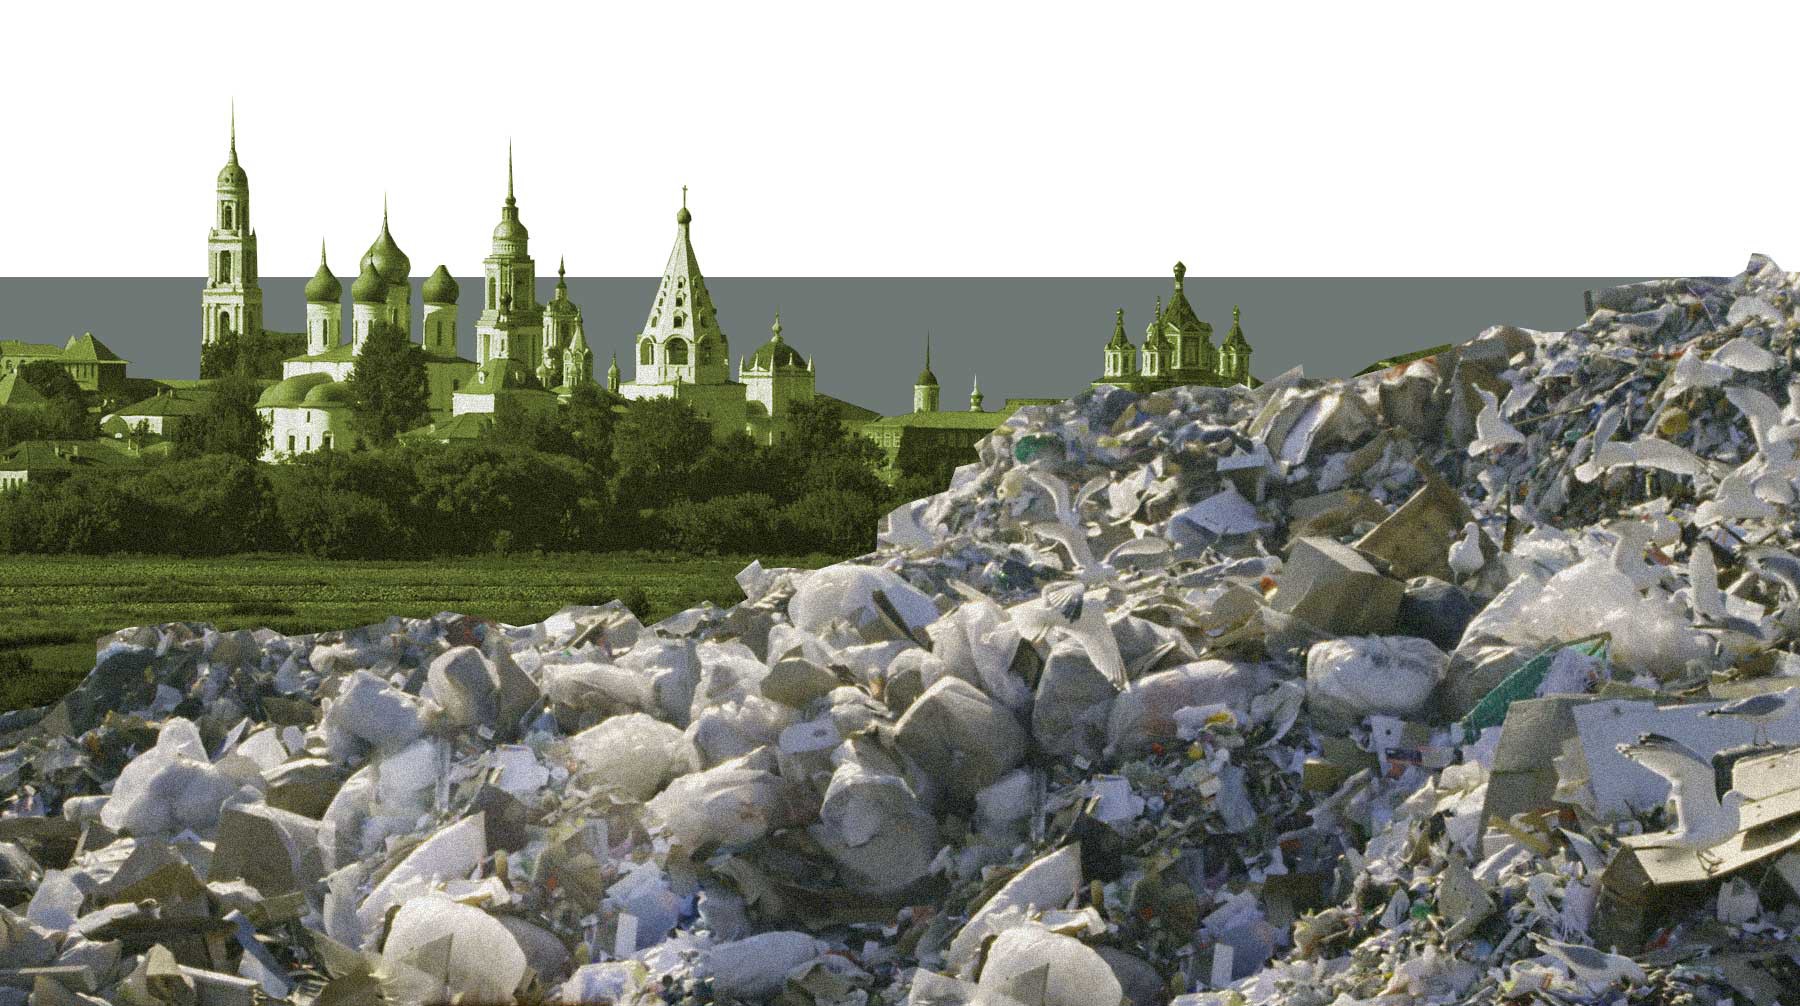 Dailystorm - «То, что происходит в Коломне, приведет к восстанию». Обыски у экоактивистов как борьба областной администрации против мусорных протестов